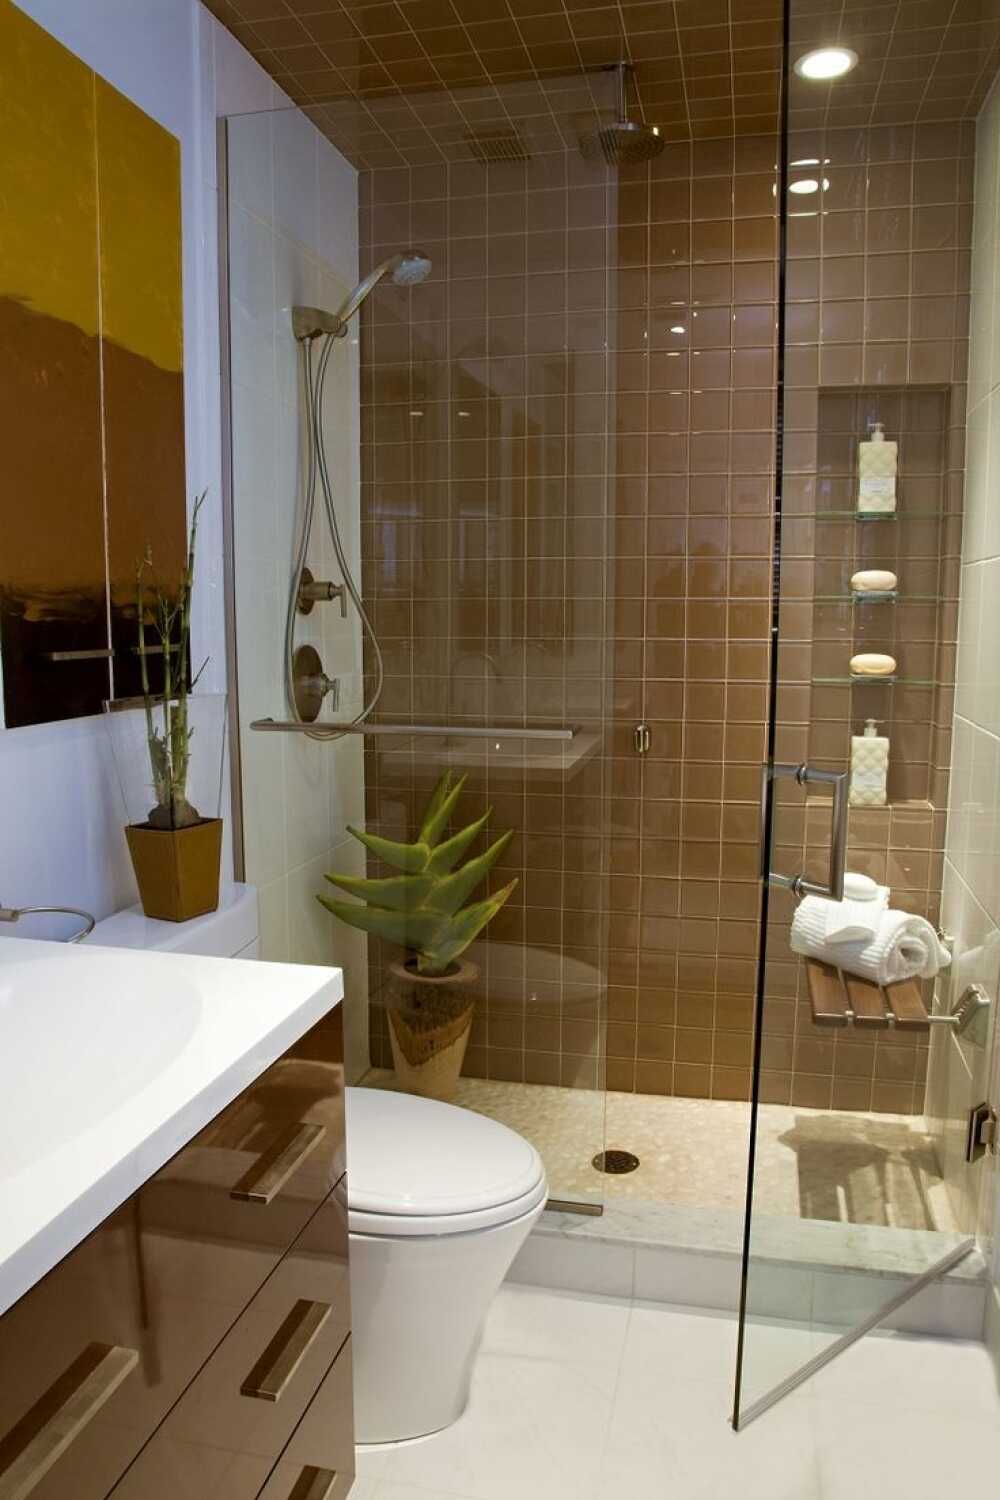 Thiết kế phòng tắm thời thượng 6m2 năm 2024 sẽ làm bạn cảm thấy hiện đại và tiên tiến. Các chi tiết thiết kế năng động và tinh tế cùng với tính năng tiện nghi đáp ứng tối đa nhu cầu của người sử dụng. Phòng tắm sẽ trở nên thông thoáng, đem đến cho bạn một không gian tuyệt vời để tận hưởng thời gian riêng tư.